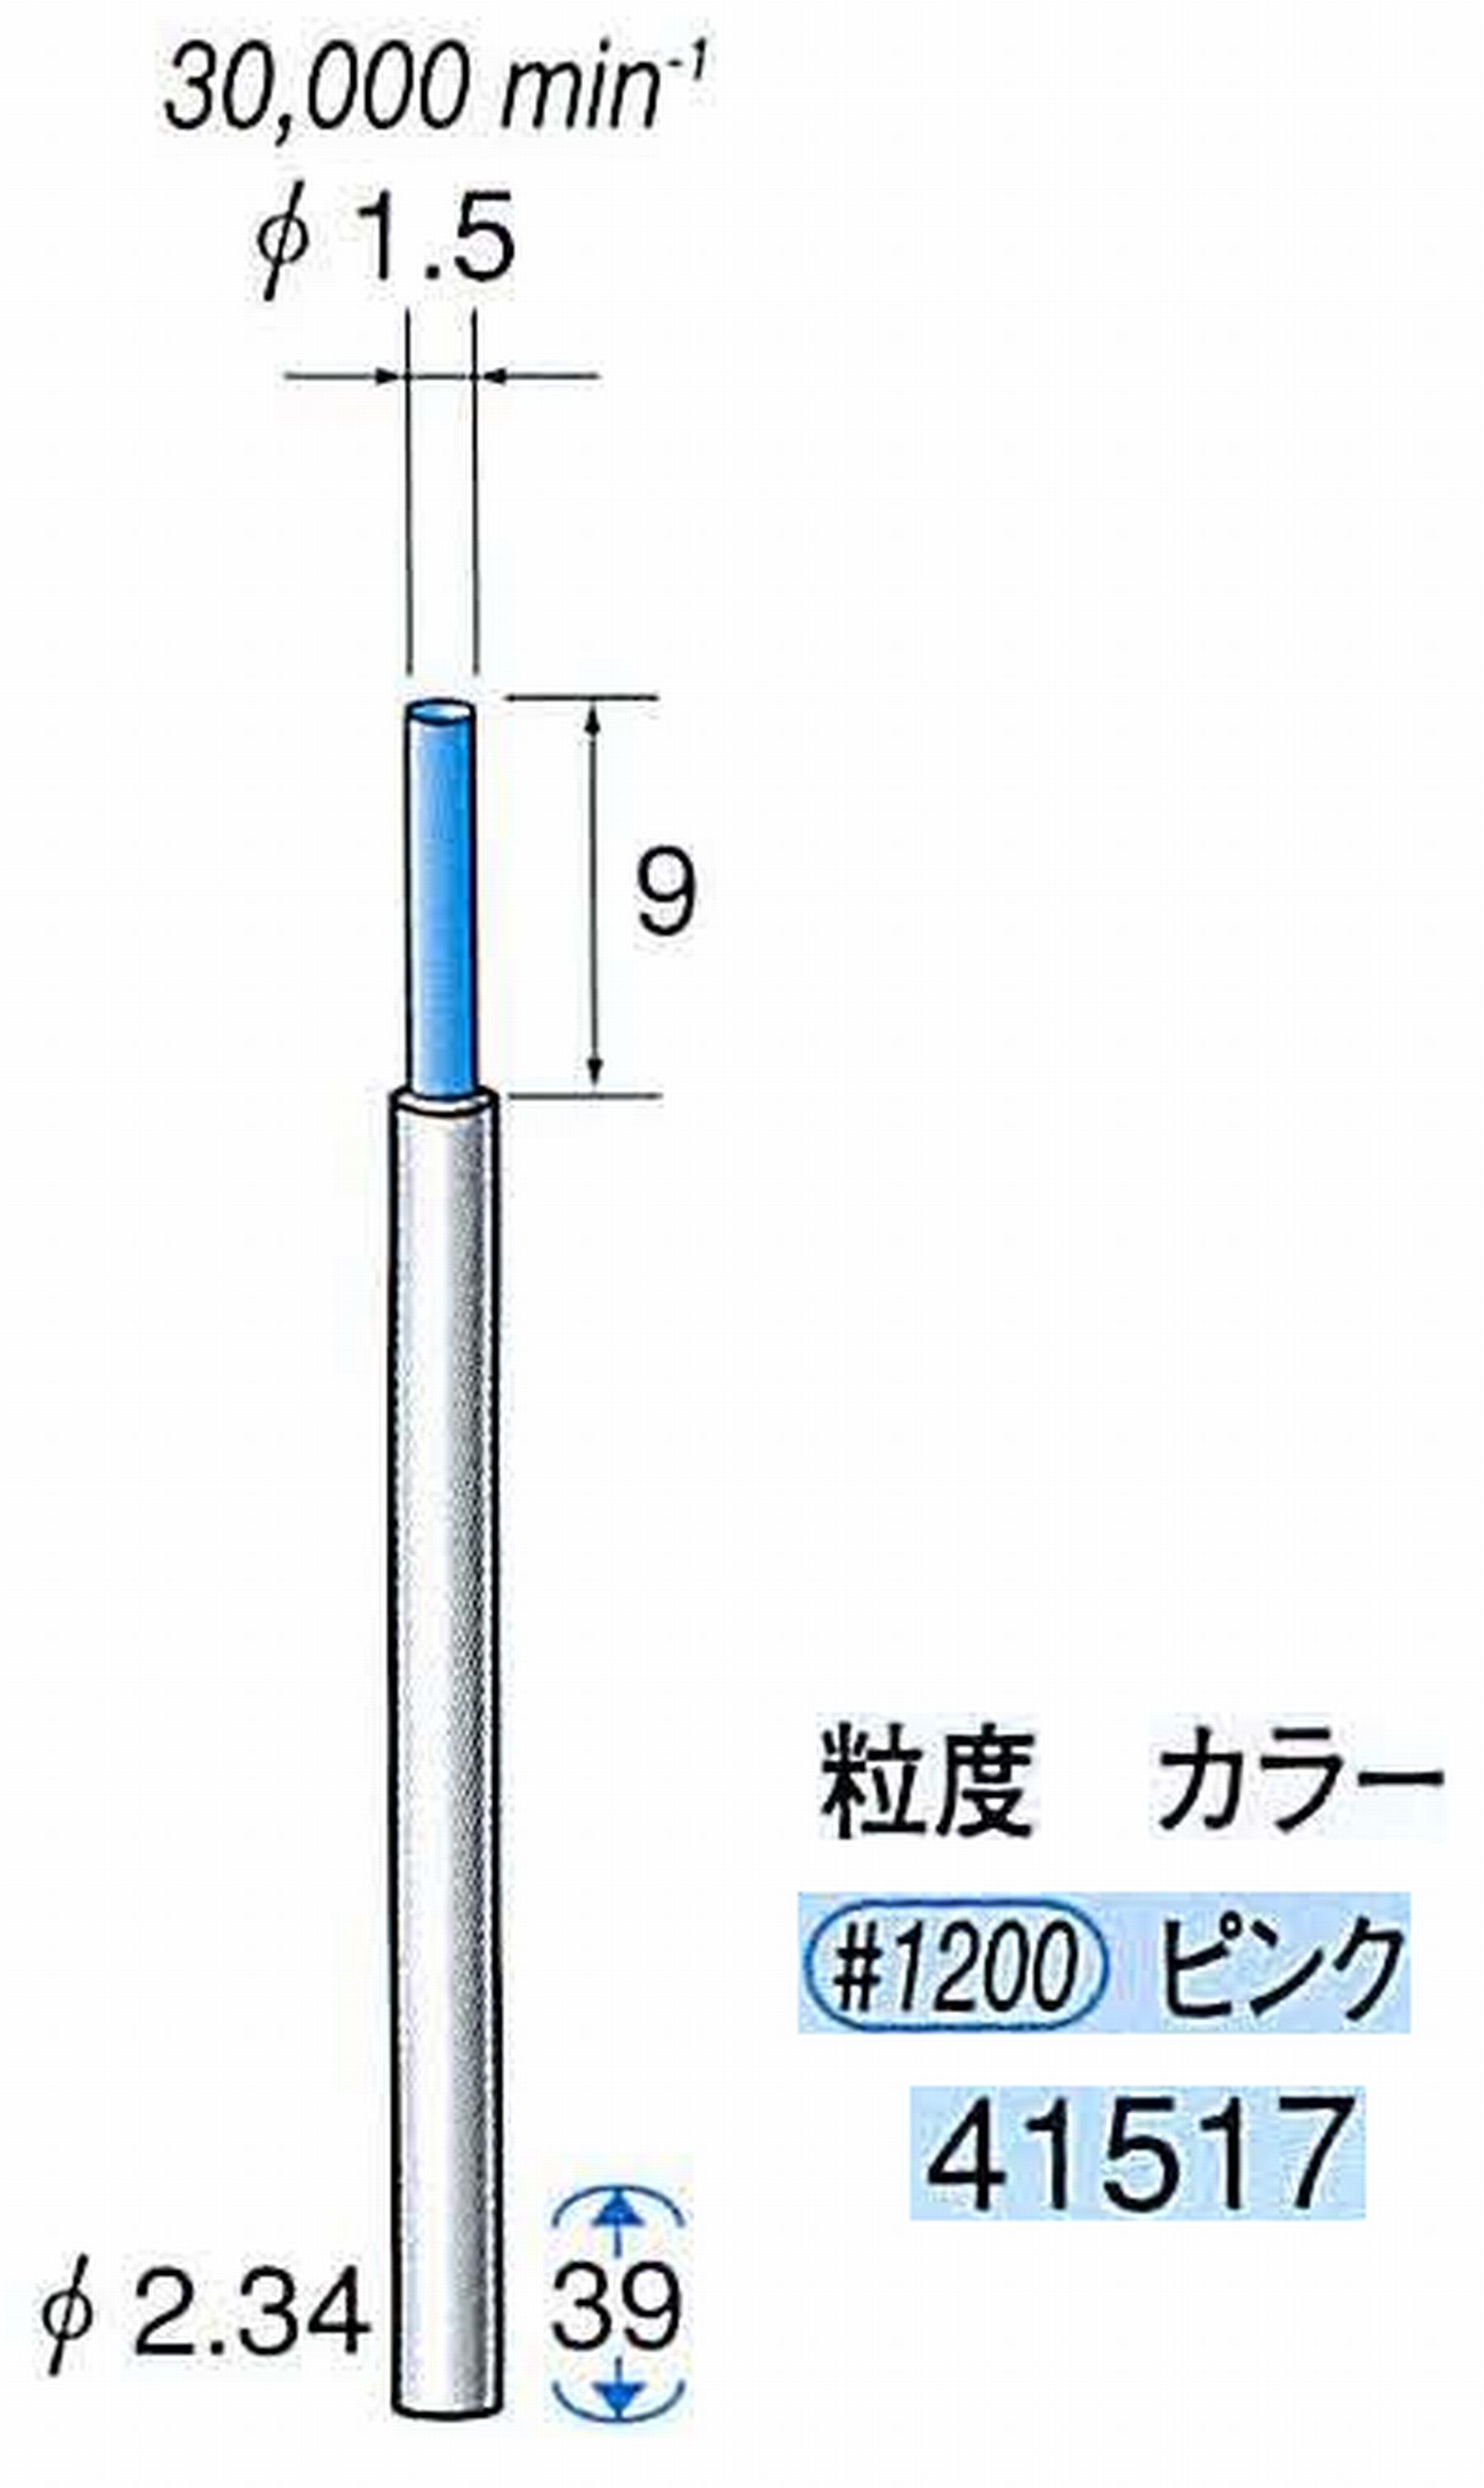 ナカニシ/NAKANISHI セラファイバー精密軸付砥石(カラー ピンク) 軸径(シャンク) φ2.34mm 41517